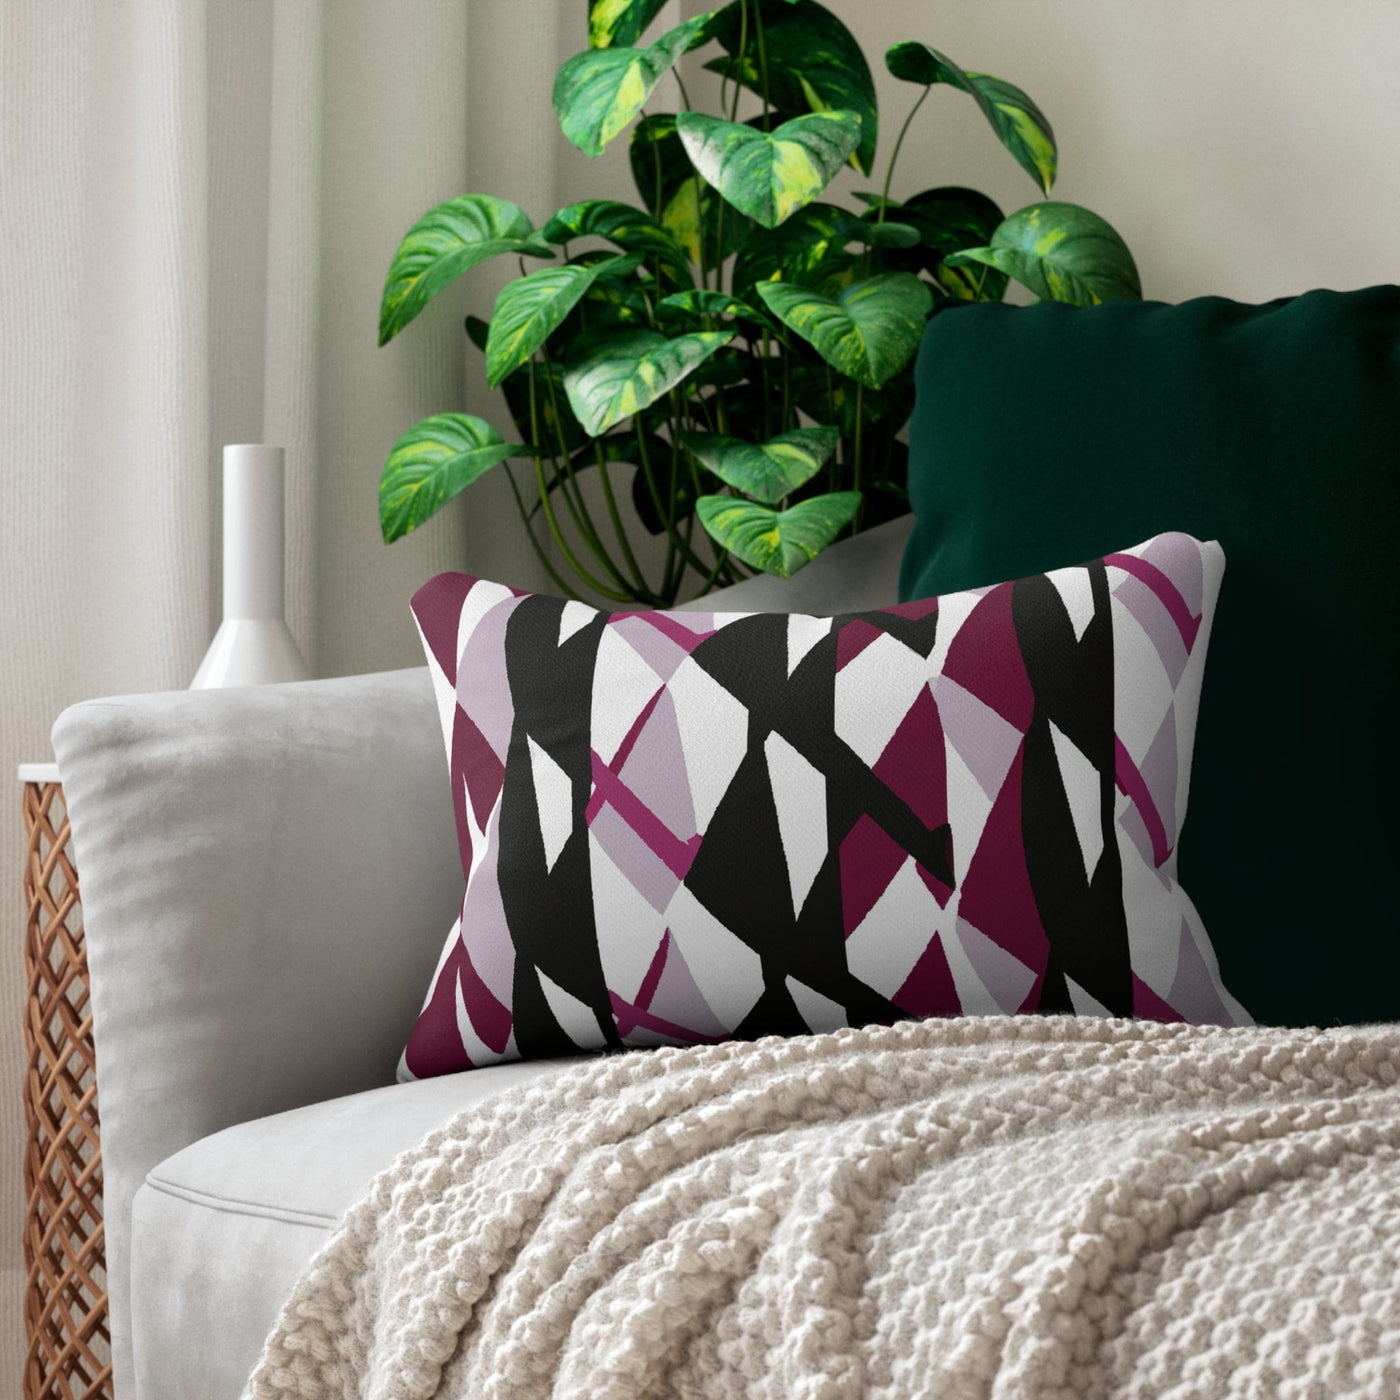 Decorative Lumbar Throw Pillow - Mauve Pink And Black Geometric Pattern